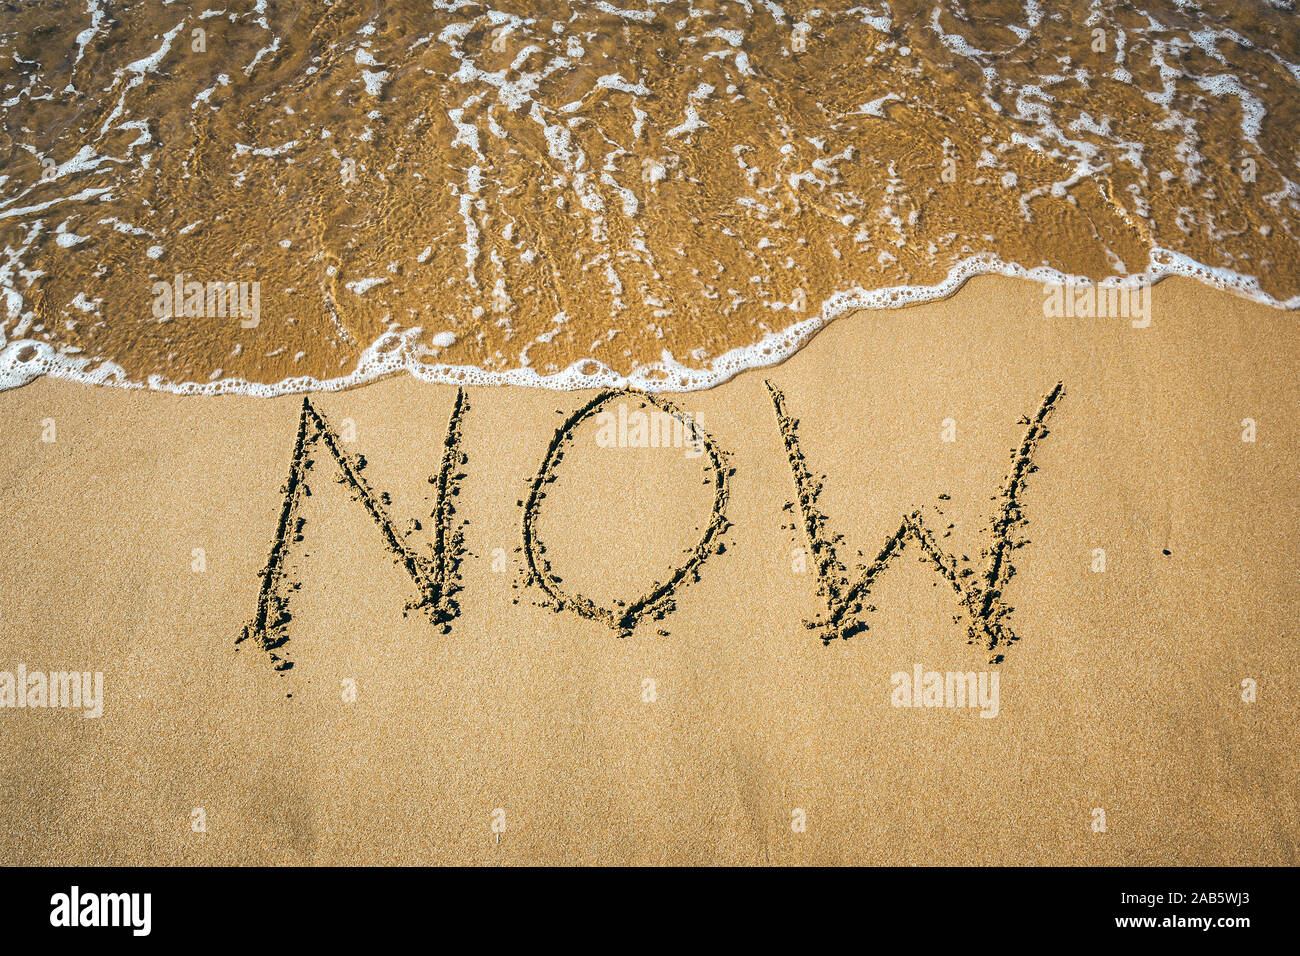 Ein Sandstrand, auf dem 'Now' geschrieben steht. Stock Photo